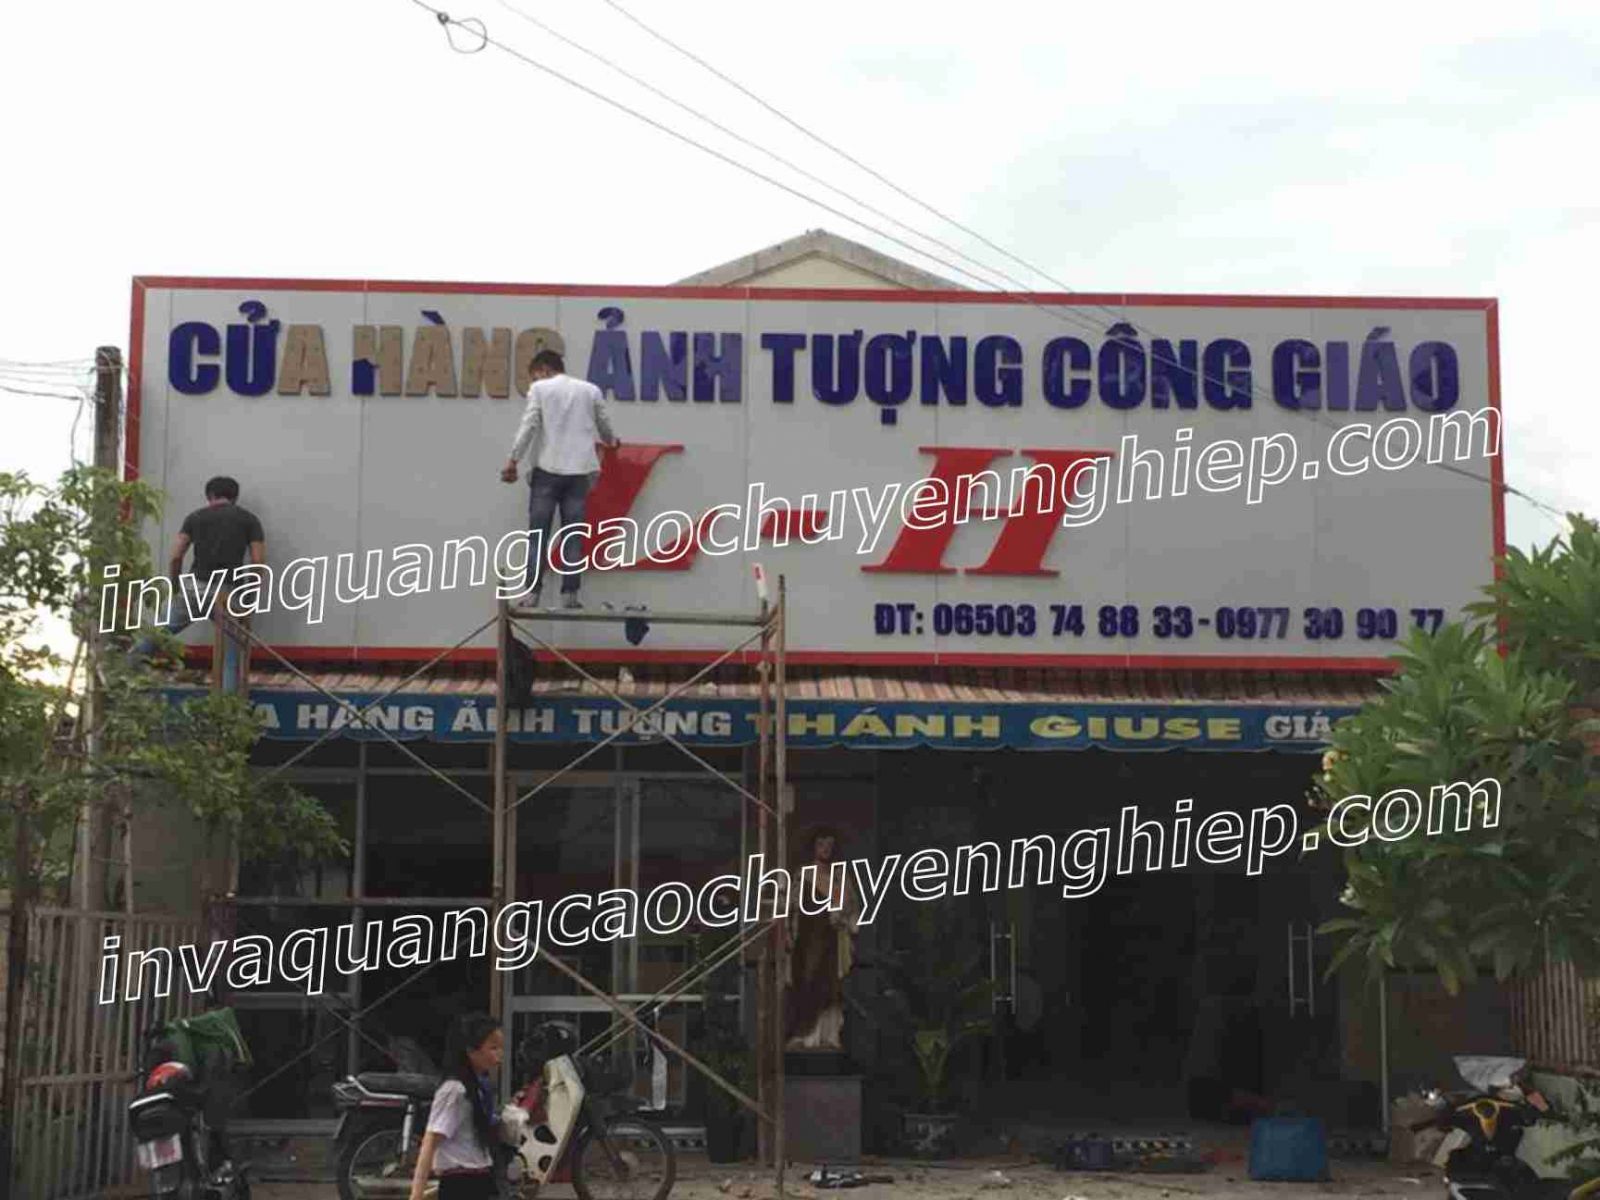 Tuyển 5 thợ làm biển quảng cáo tại Hà Nội đi làm ngay